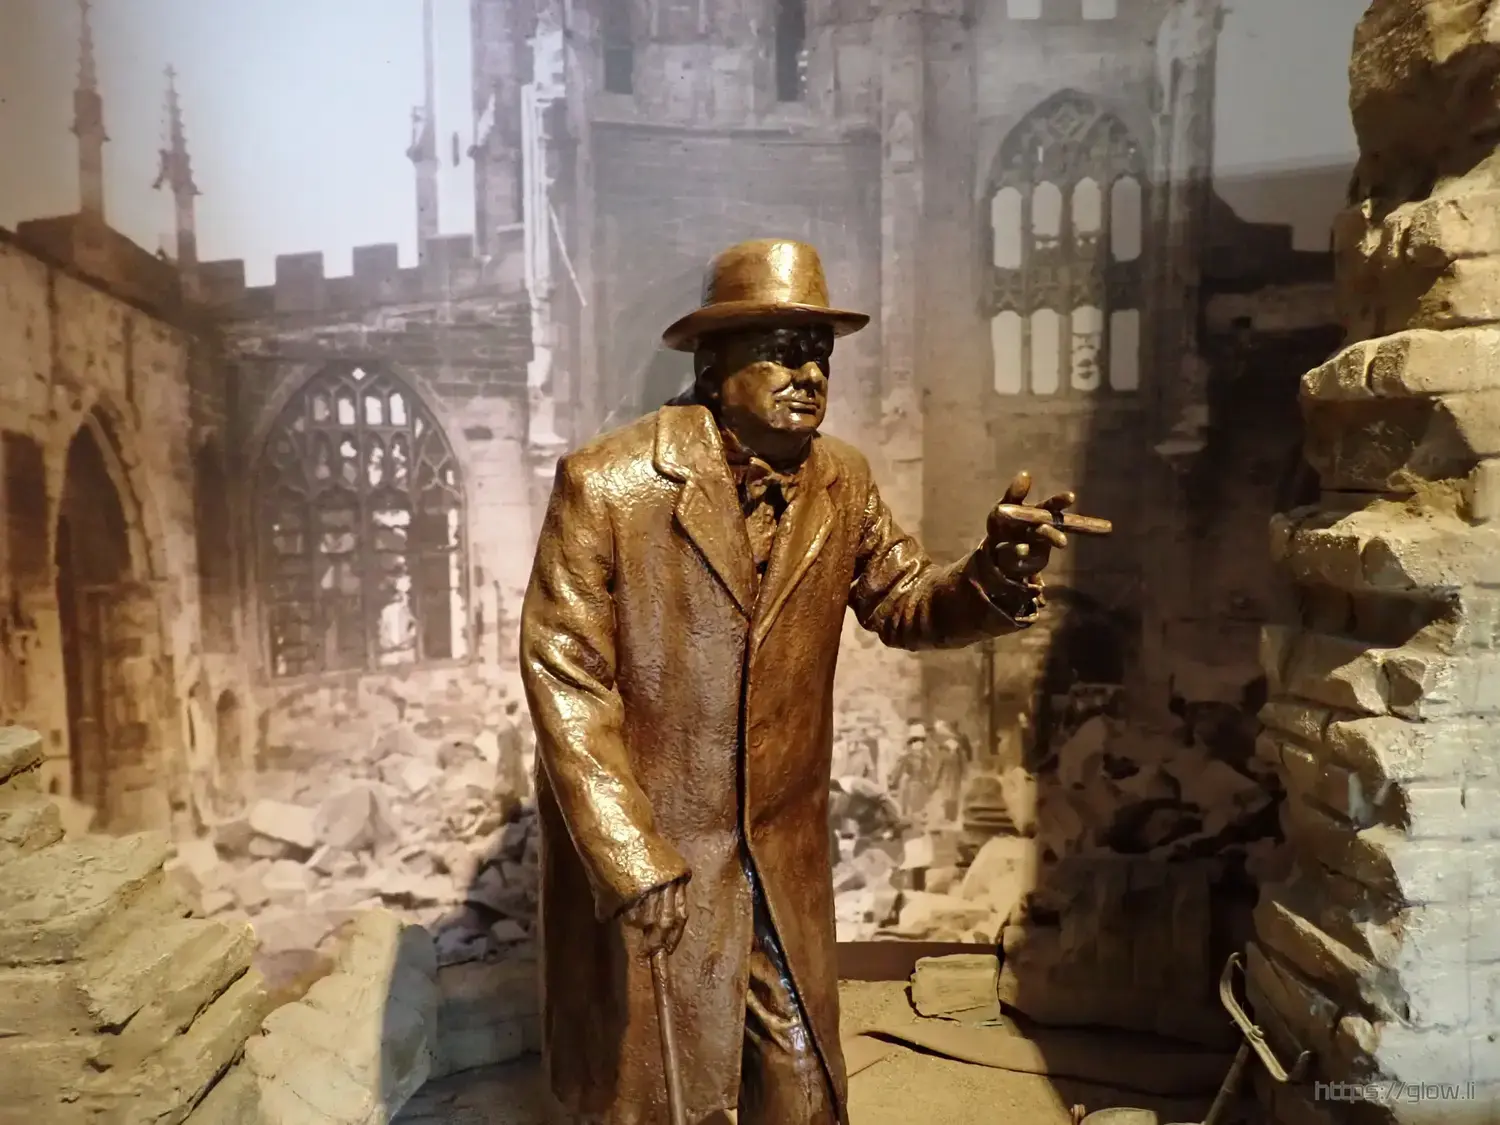 Photo of a Winston Churchill statue